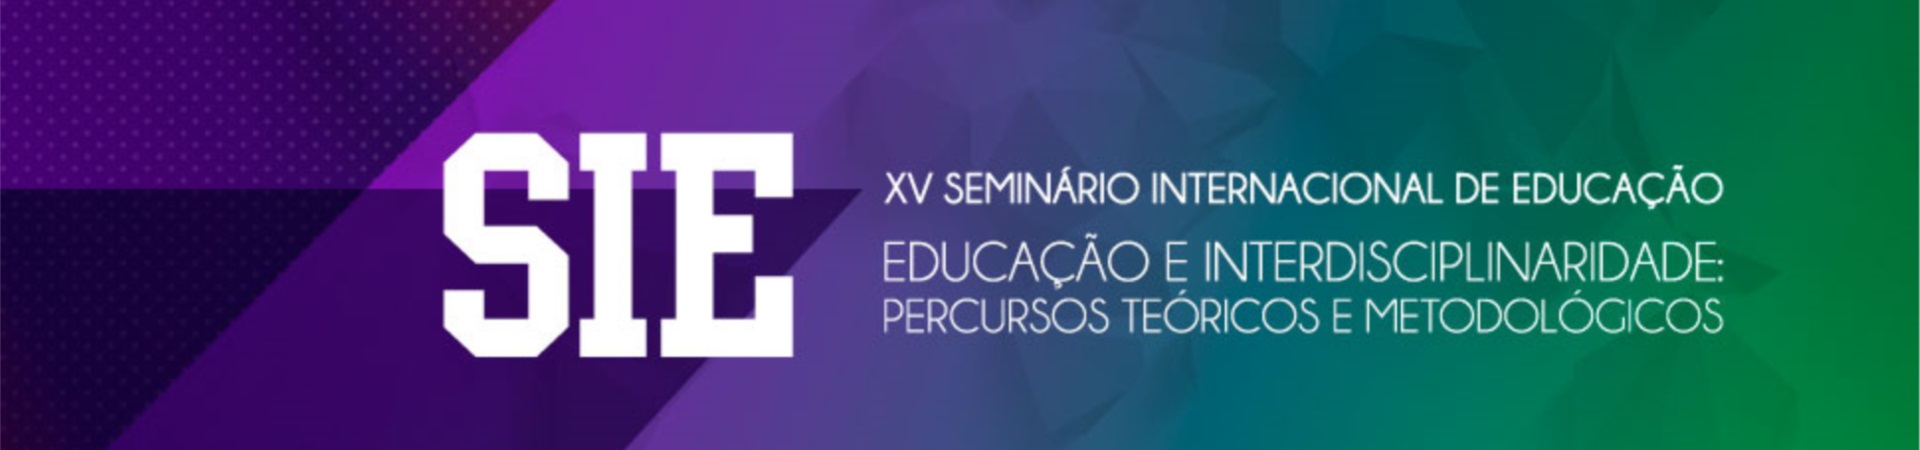 Banner de topo - XV Seminário Internacional de Educação